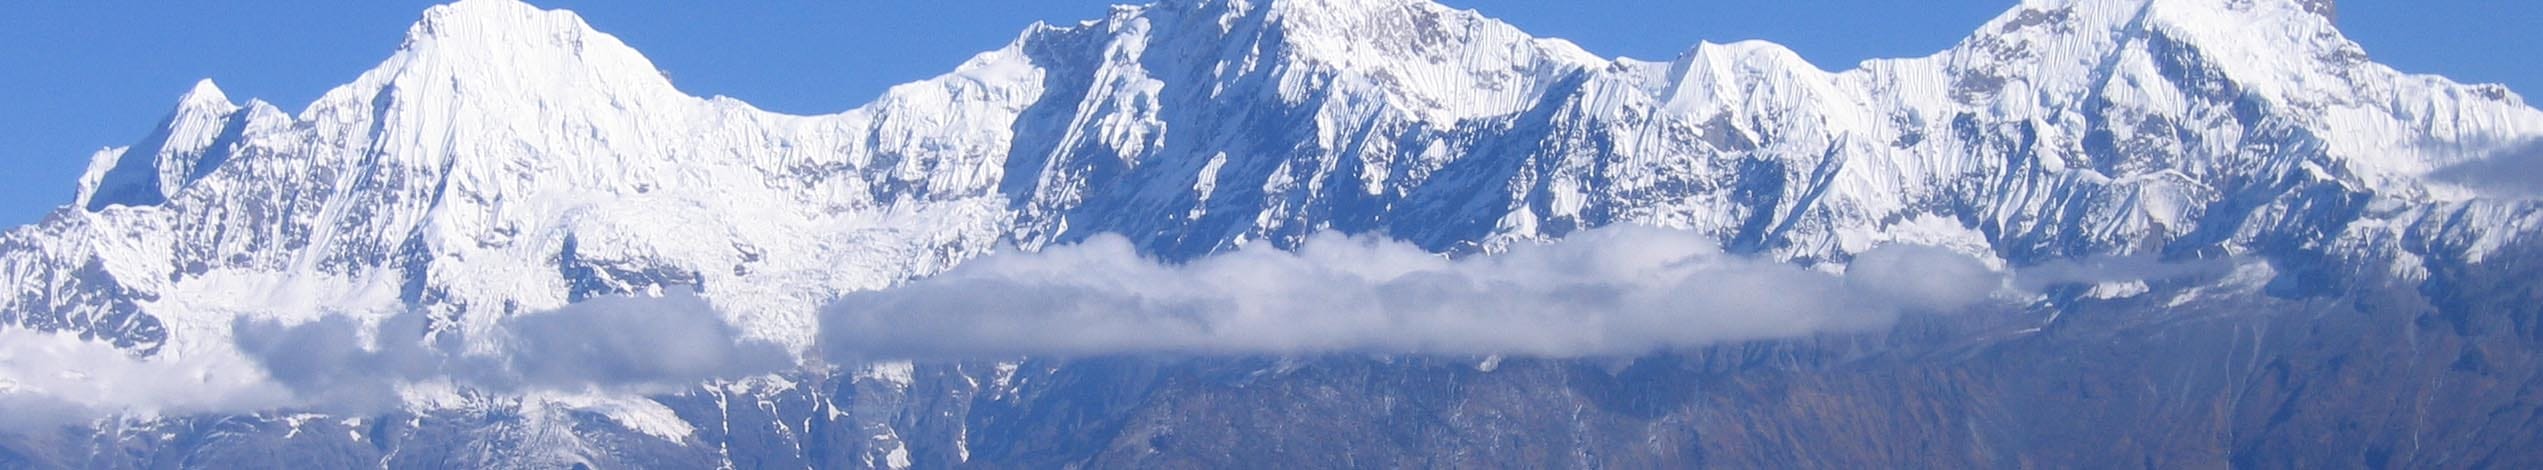 Telttrek ved Ganesh Himal